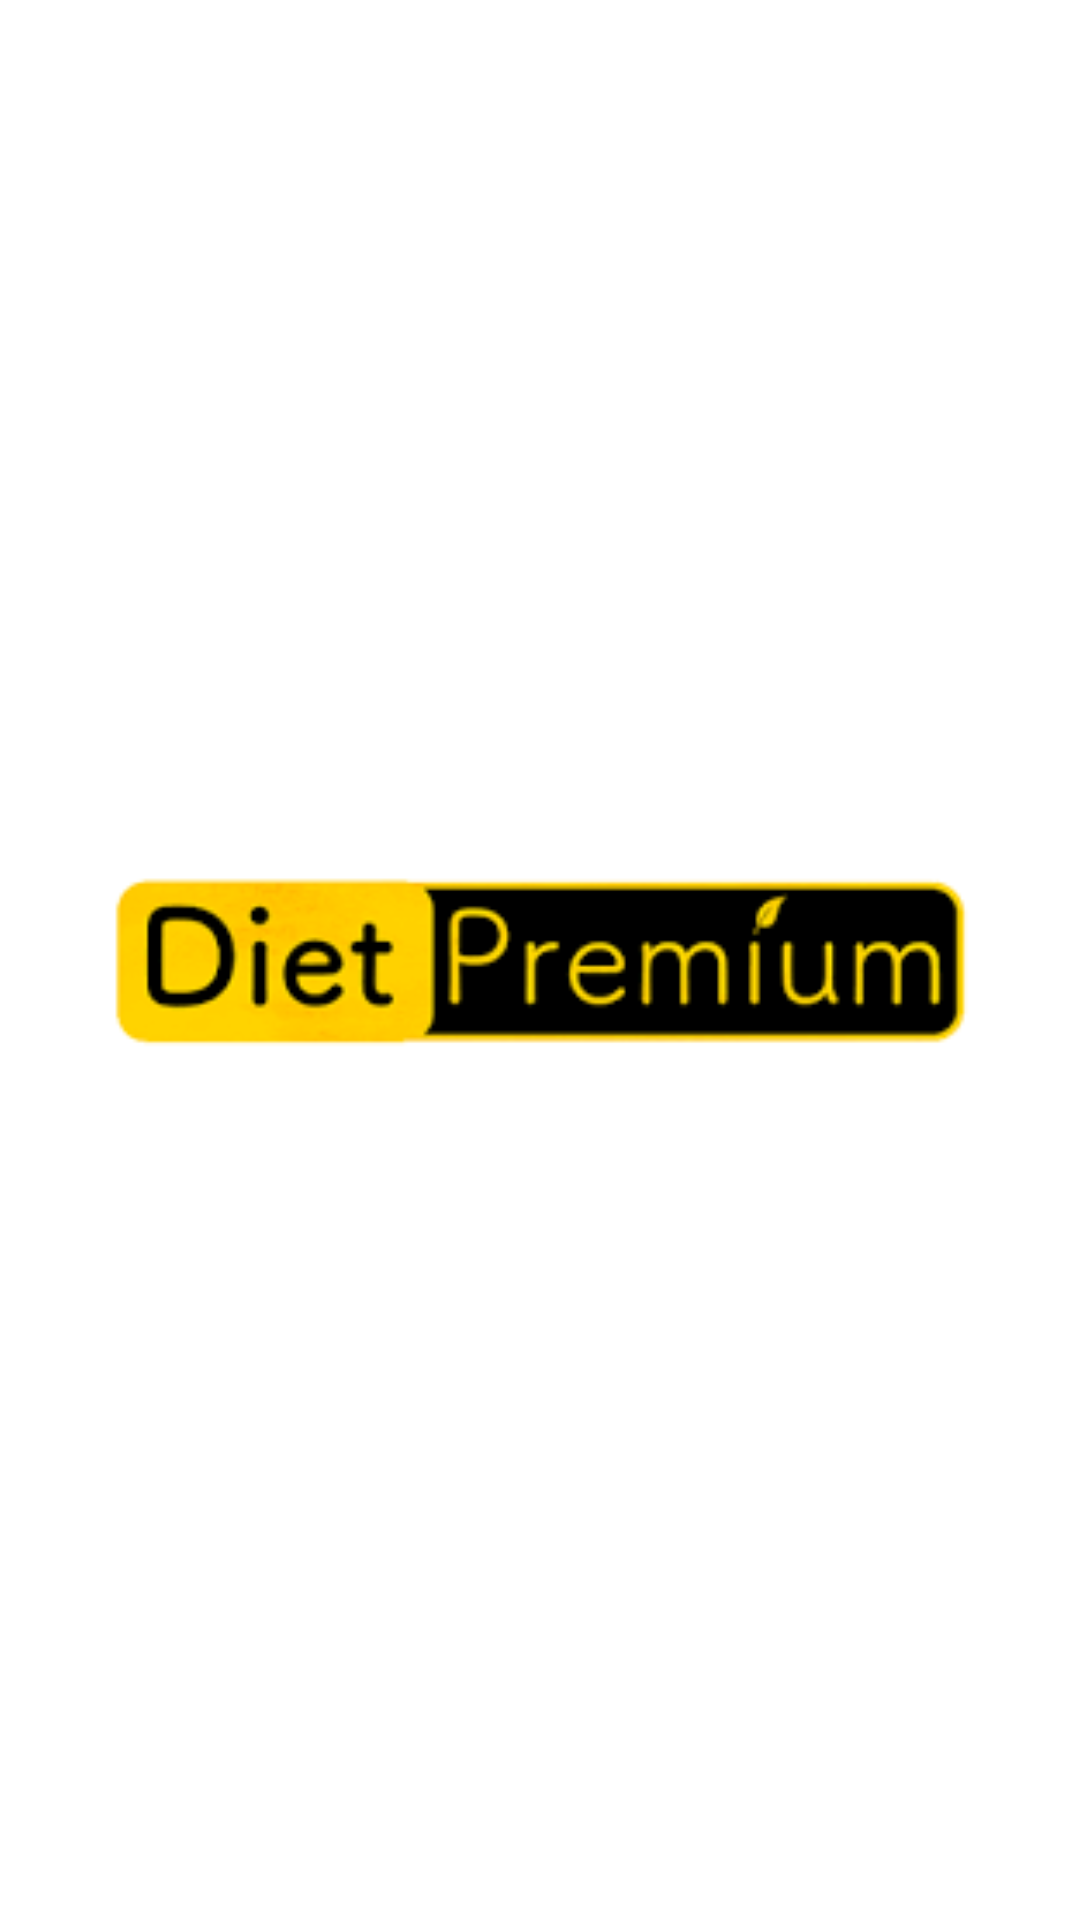 Diet Premium